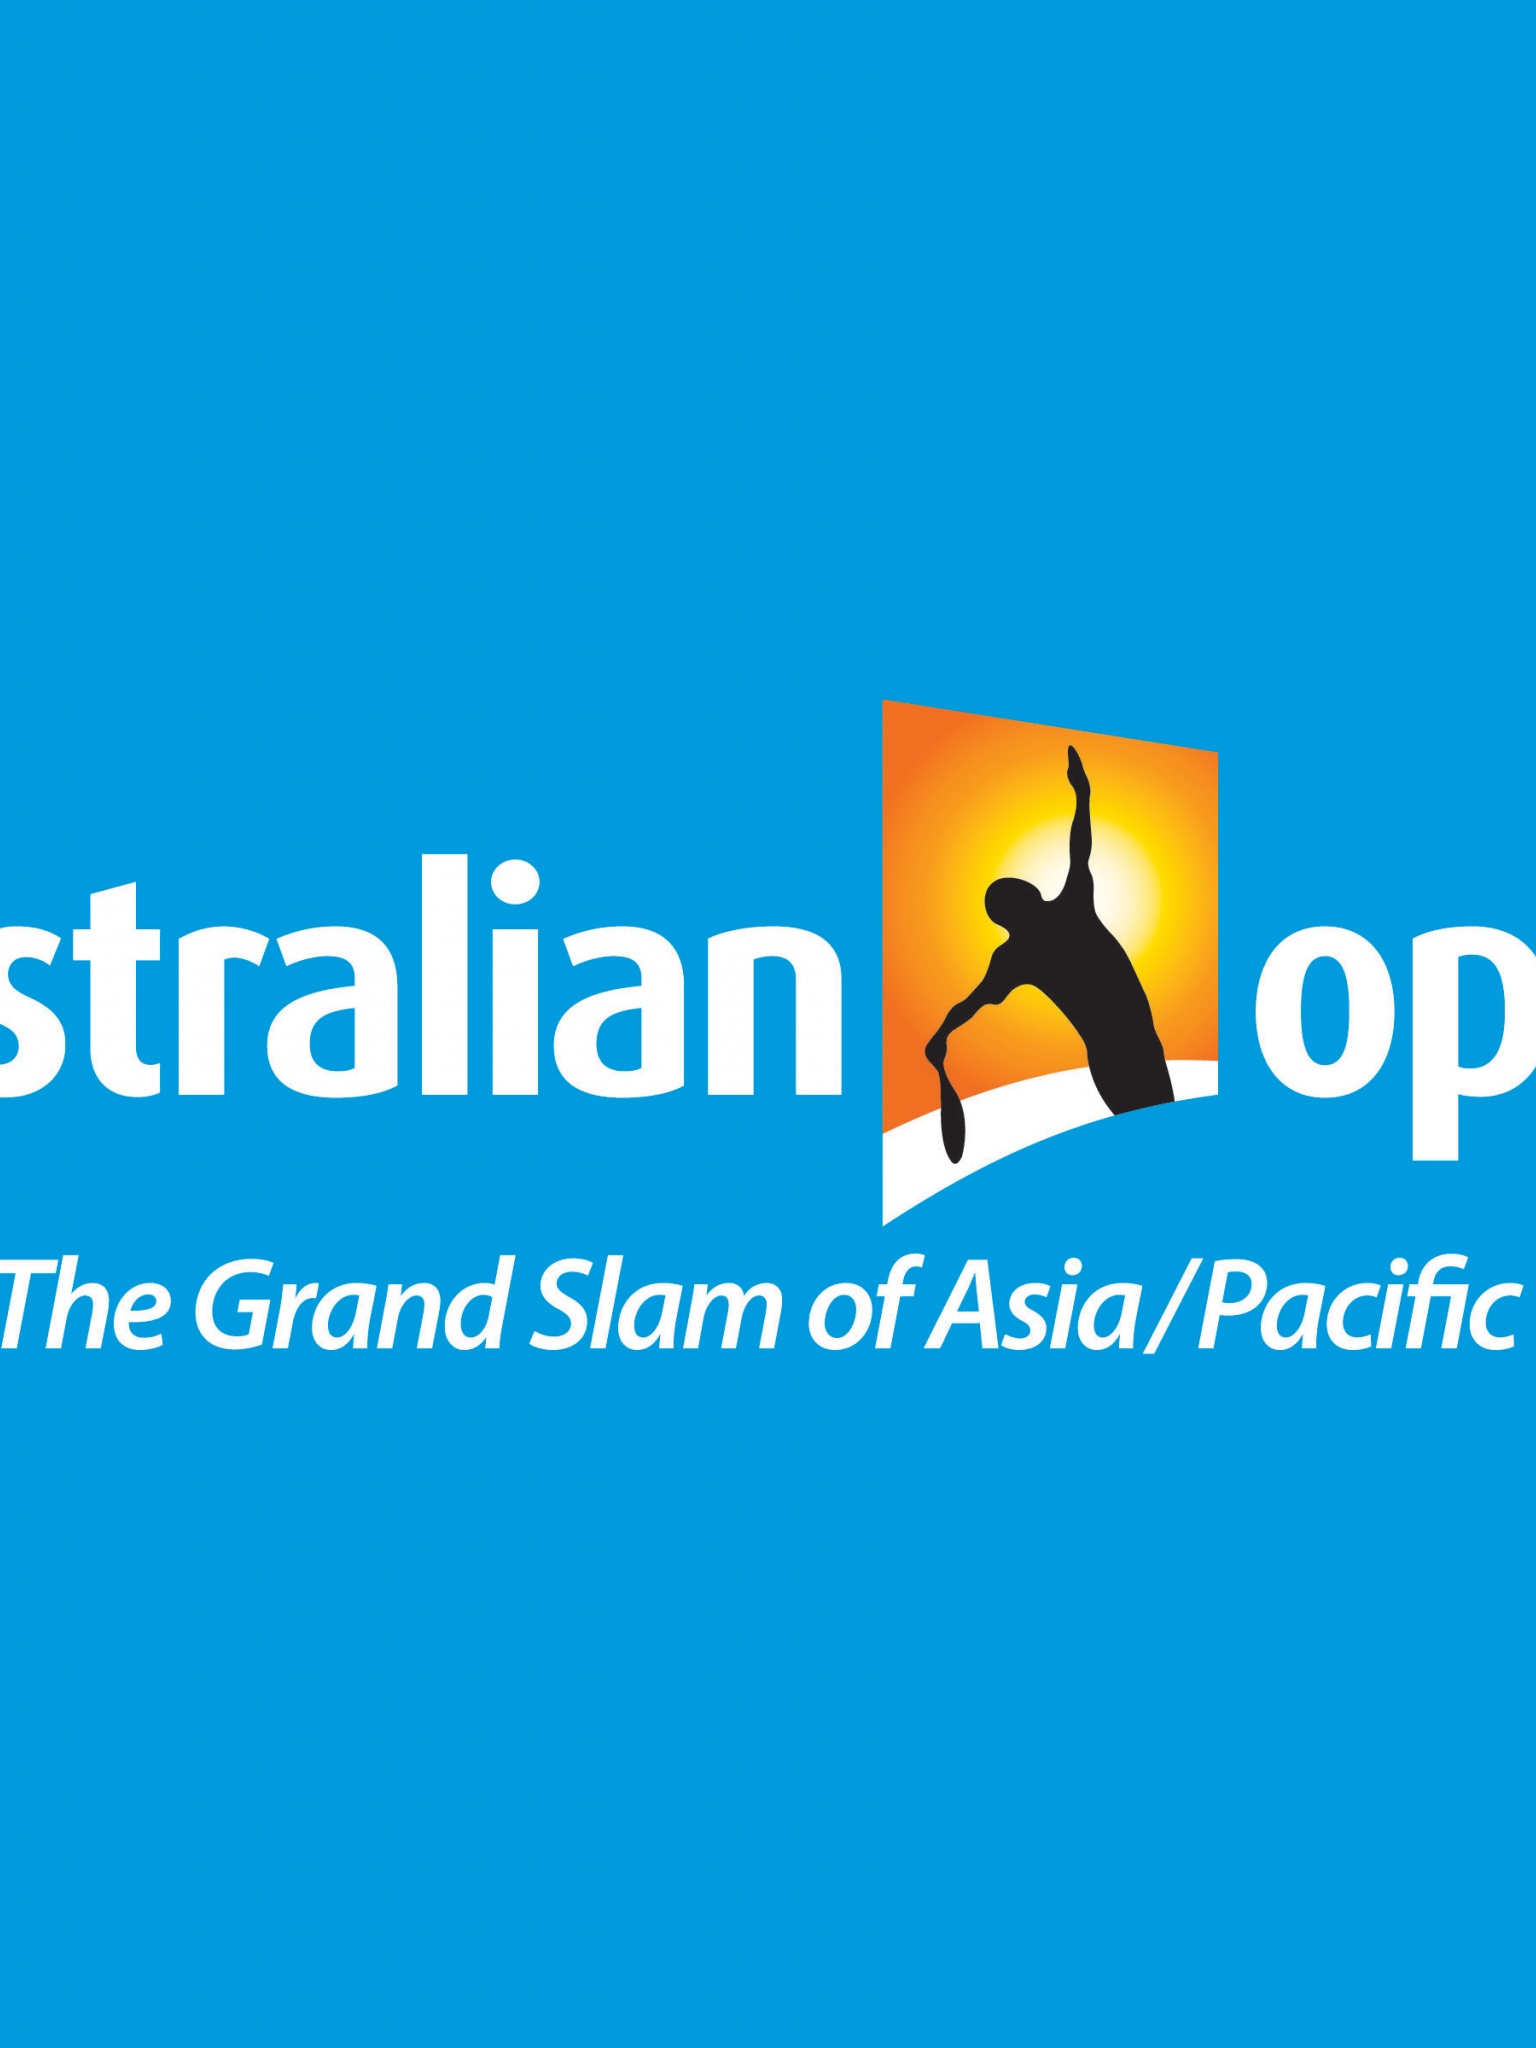 Australian Open 2014 Logo